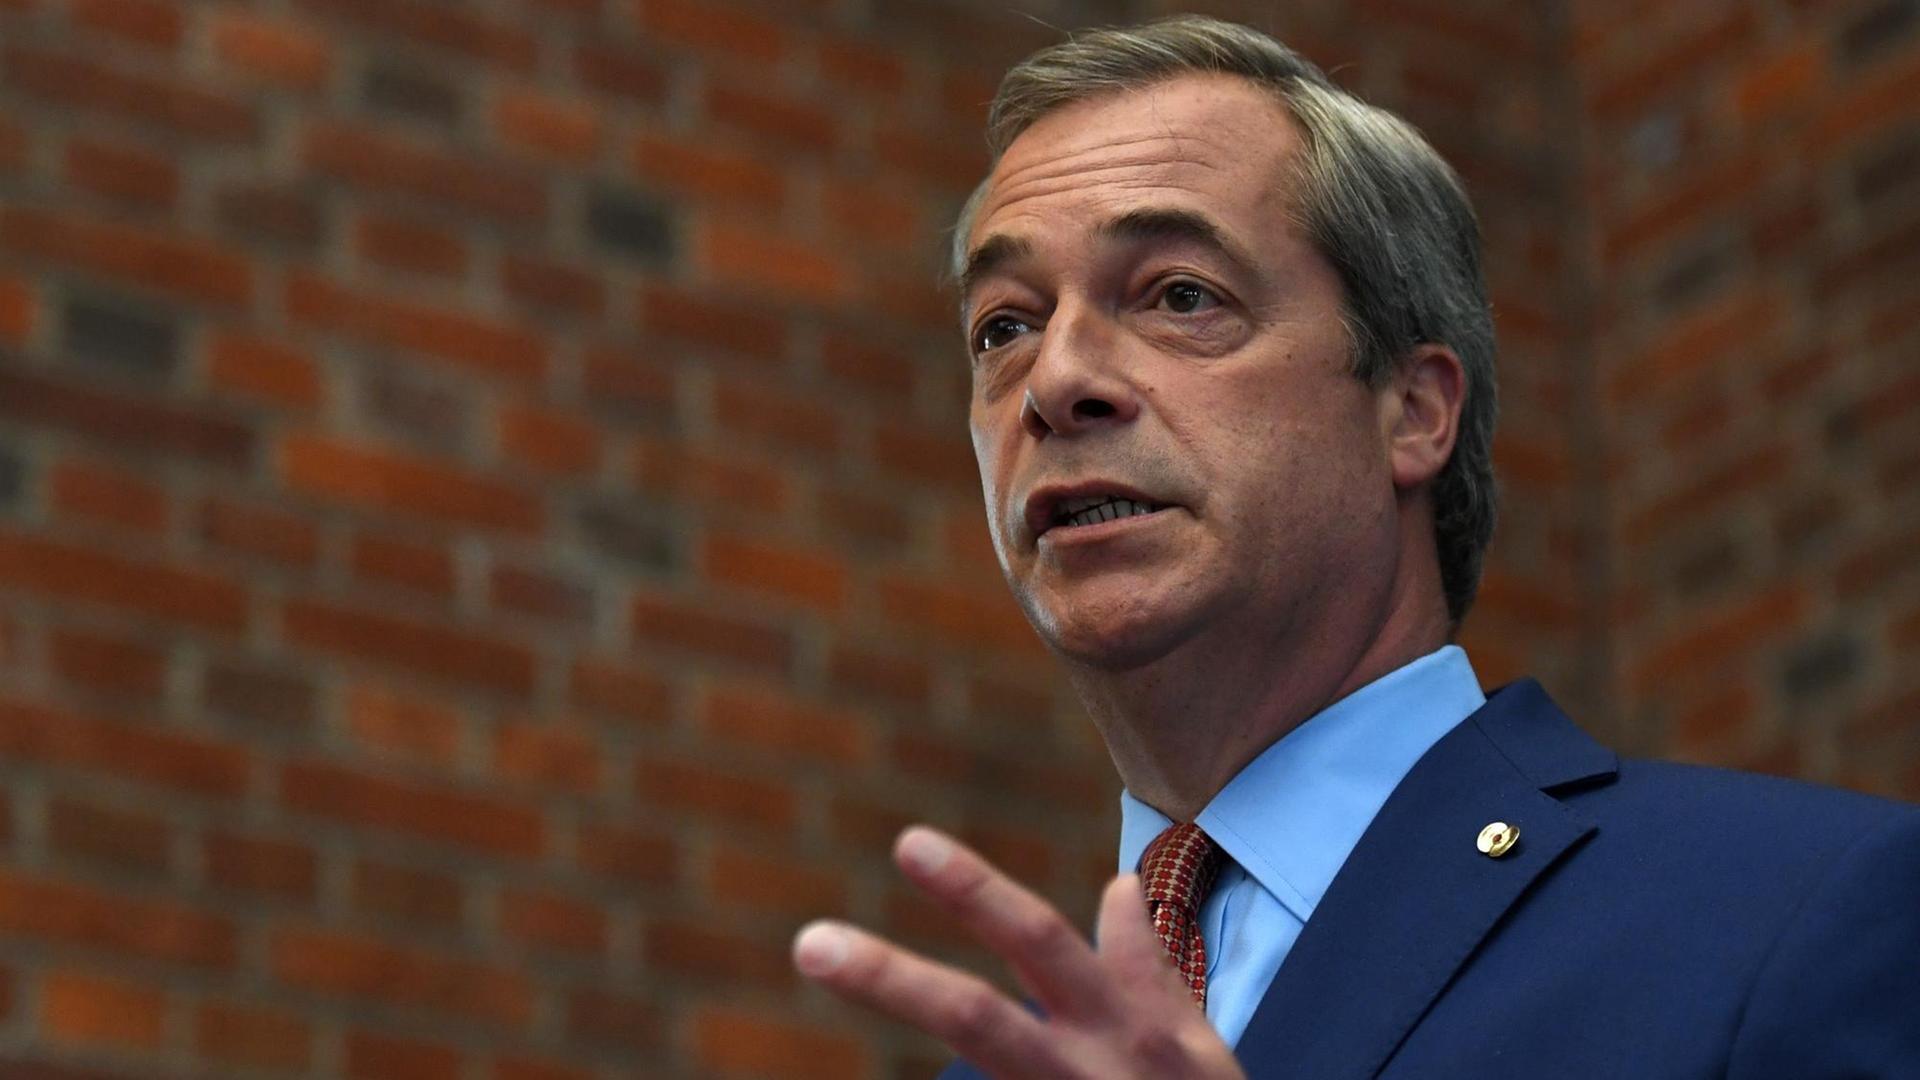 Der bisherige Vorsitzende der Unabhängigkeitspartei UKIP, Nigel Farage, während der Ankündigung seines Rückzugs als Parteichef.